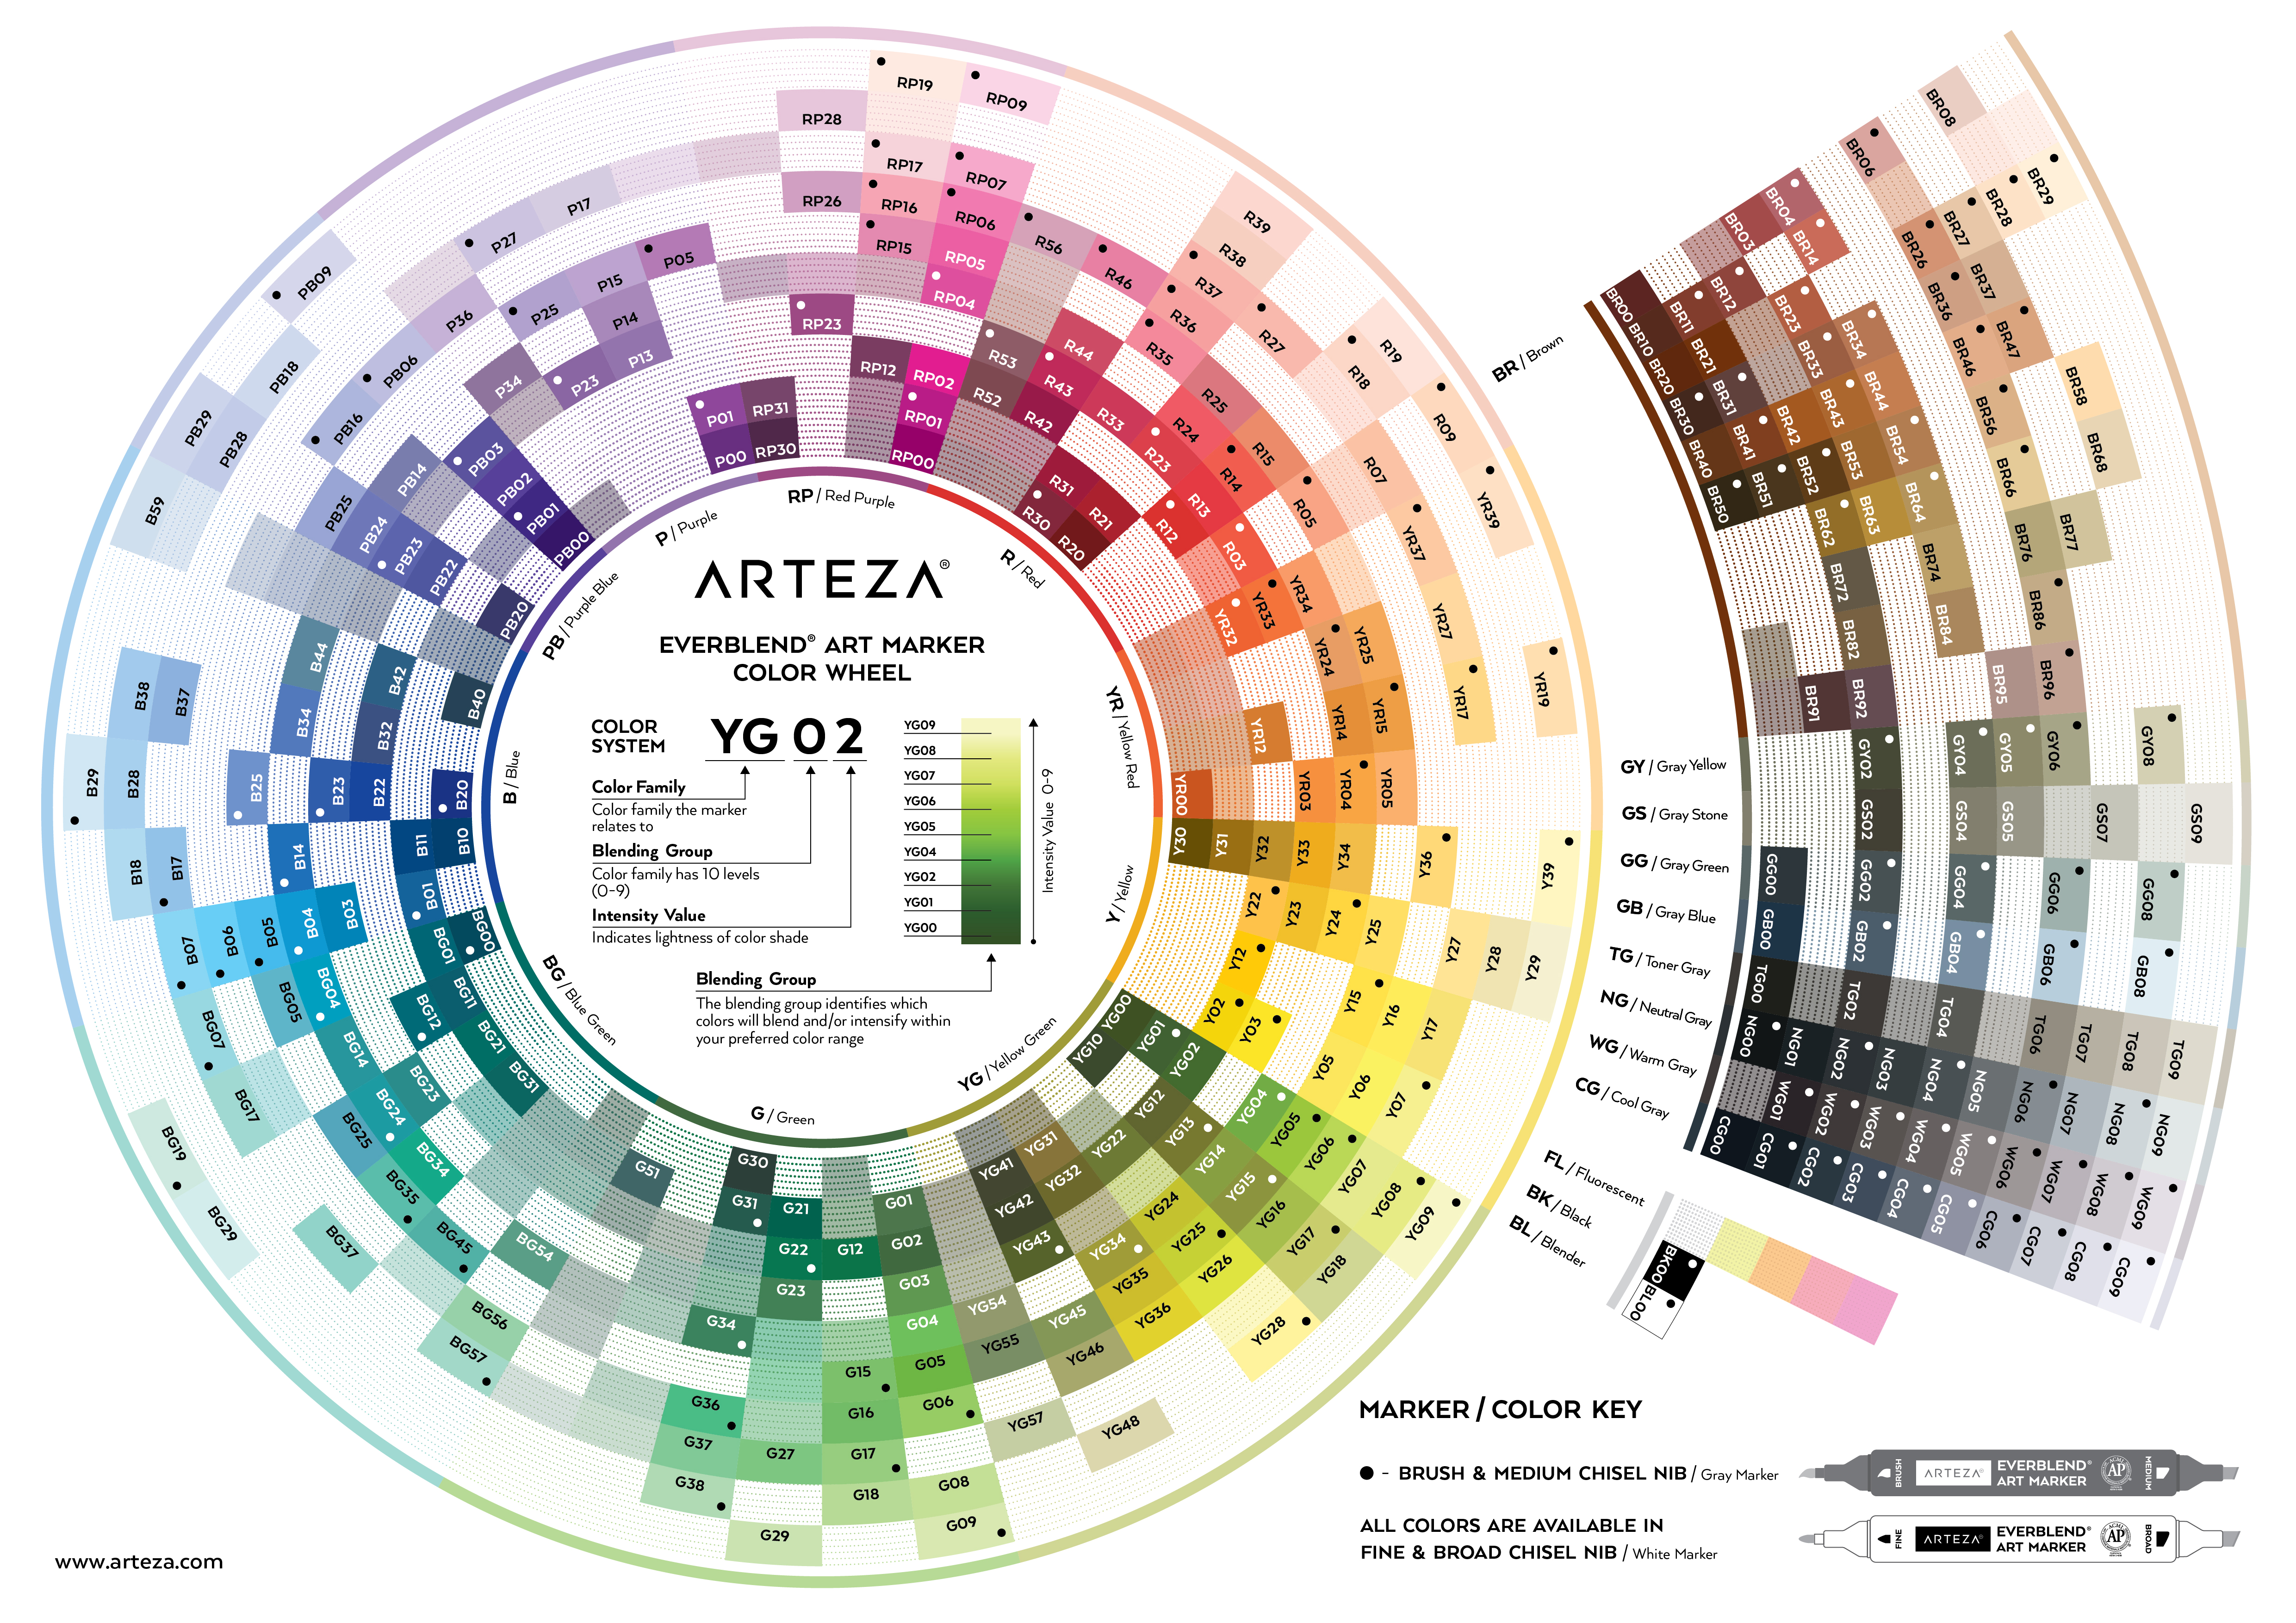 Arteza® 8 Color Pastel Tones Oil-Based Bullet Tip Marker Set